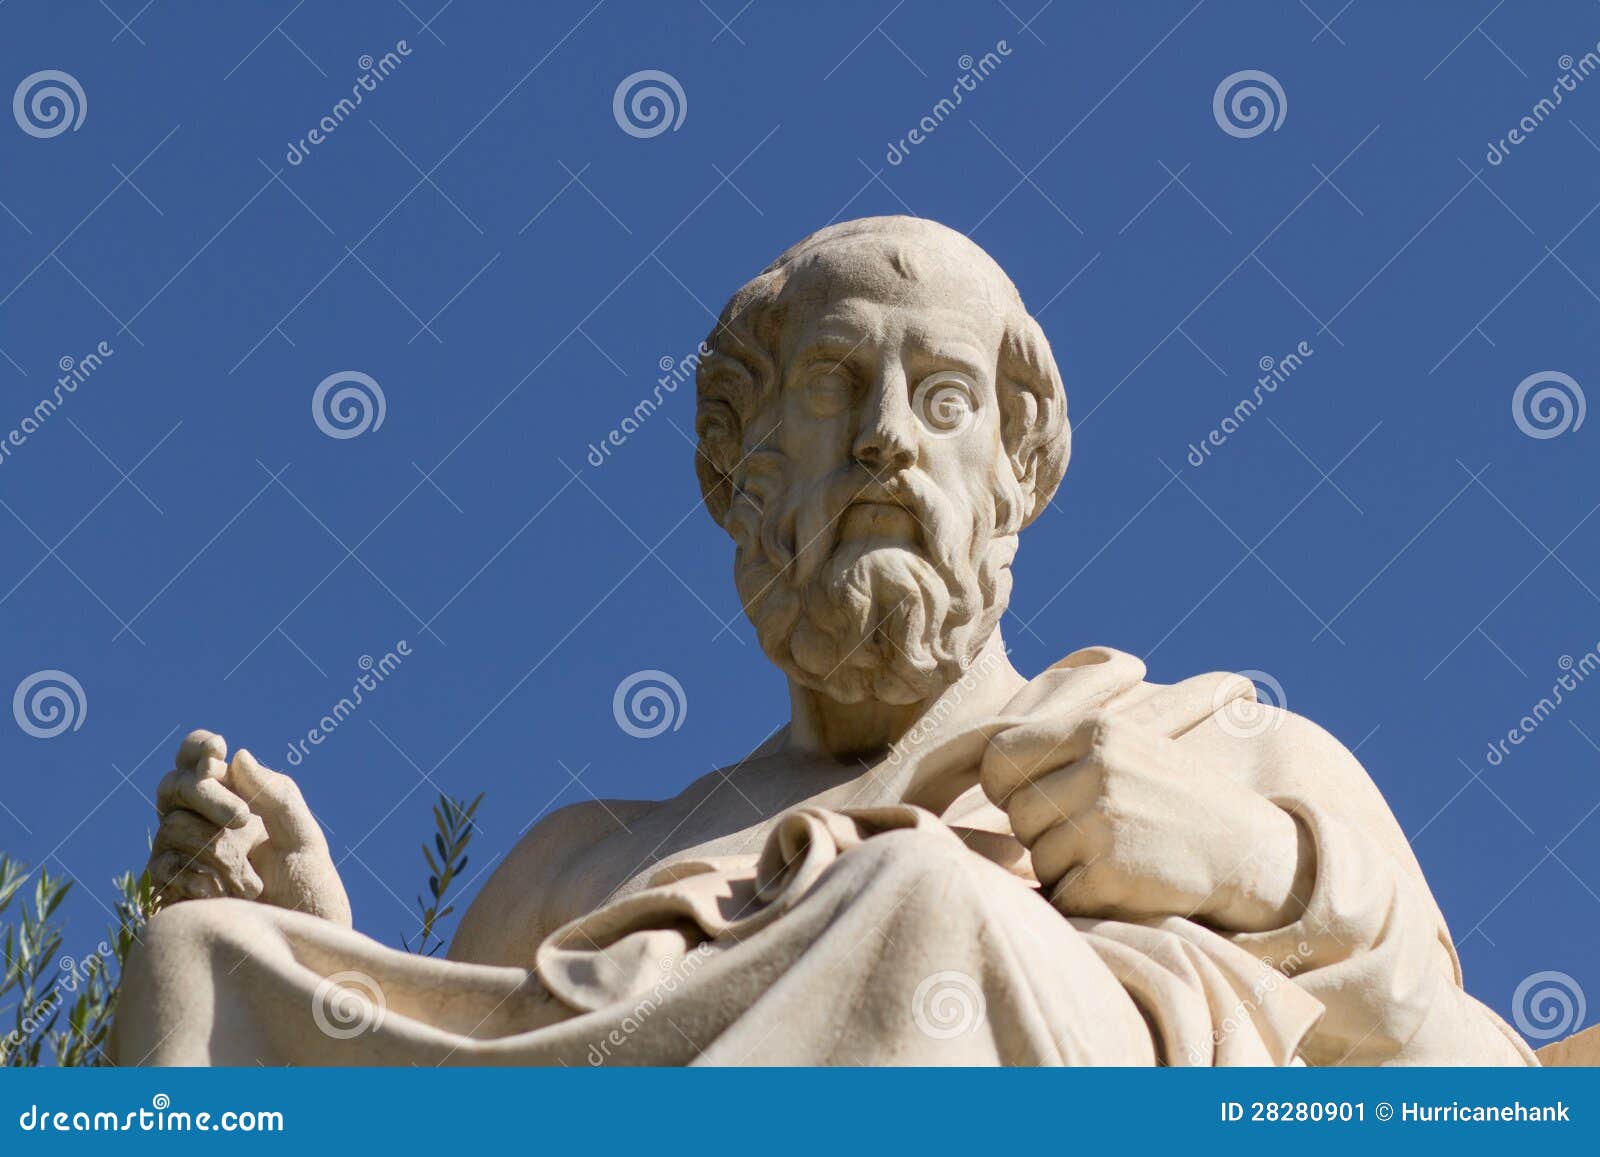 statue of plato in greece